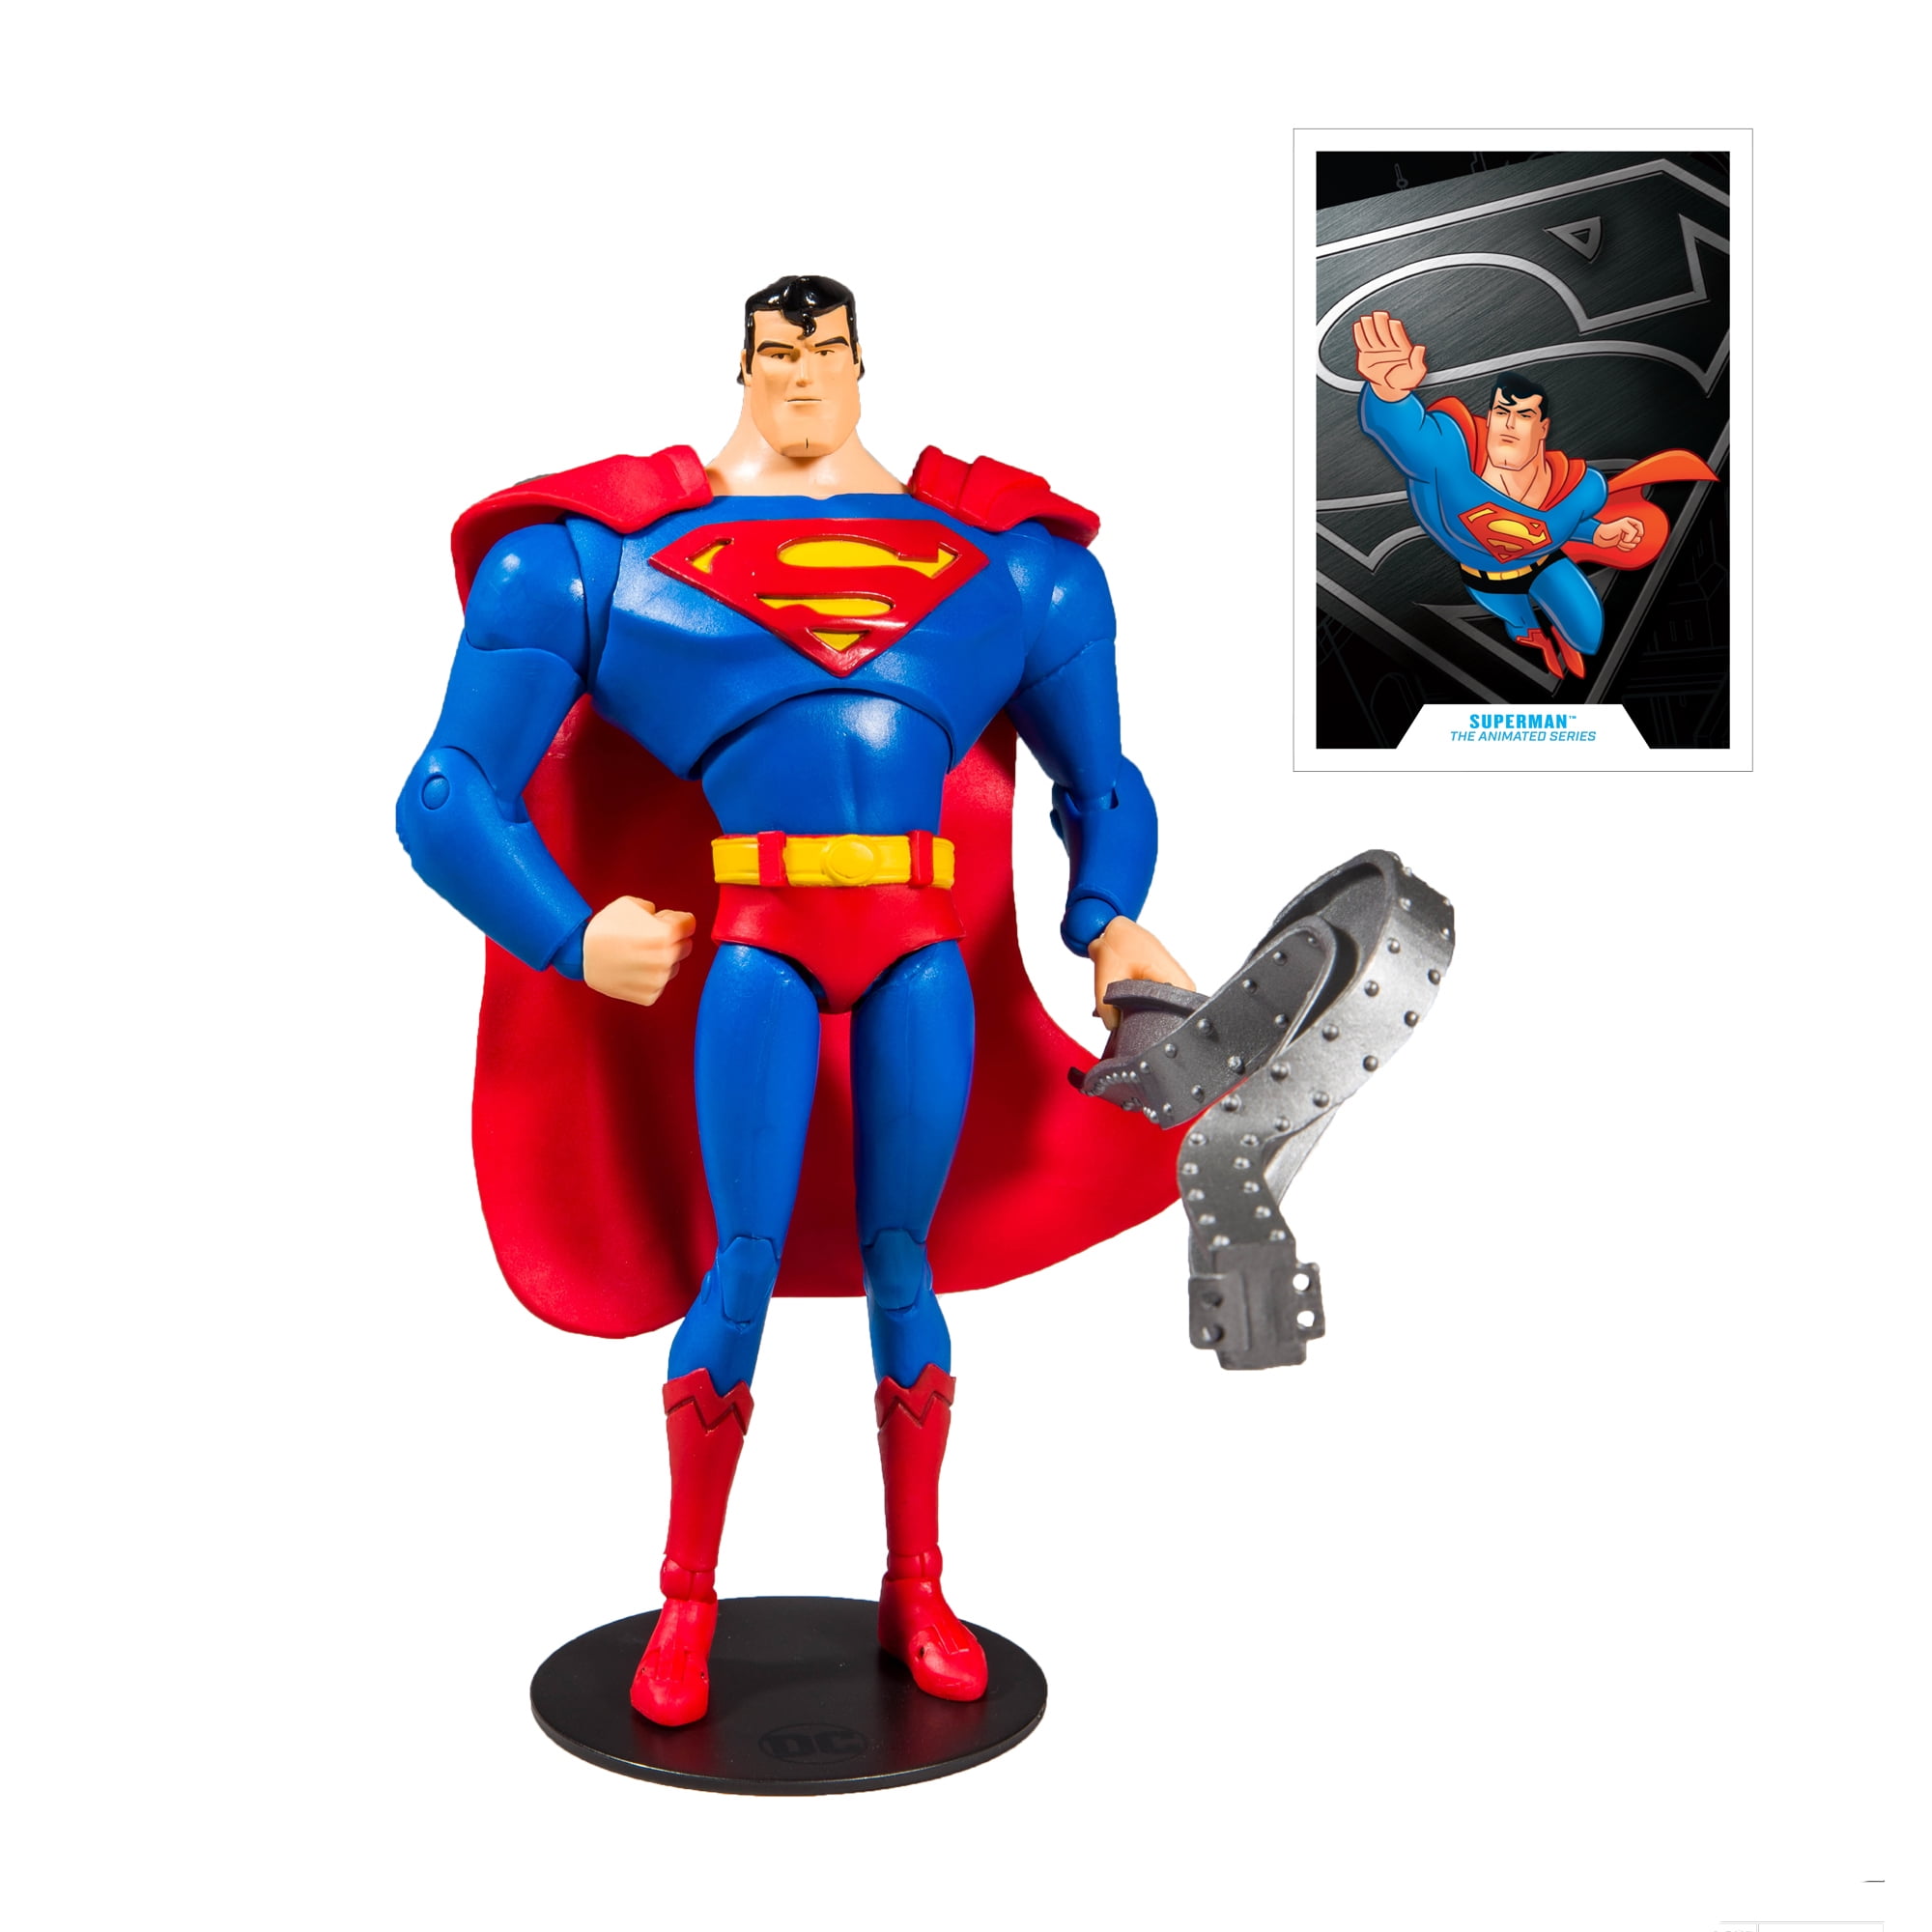 Superman car truck vinyl decal sticker DC batman super man comic book kal el 